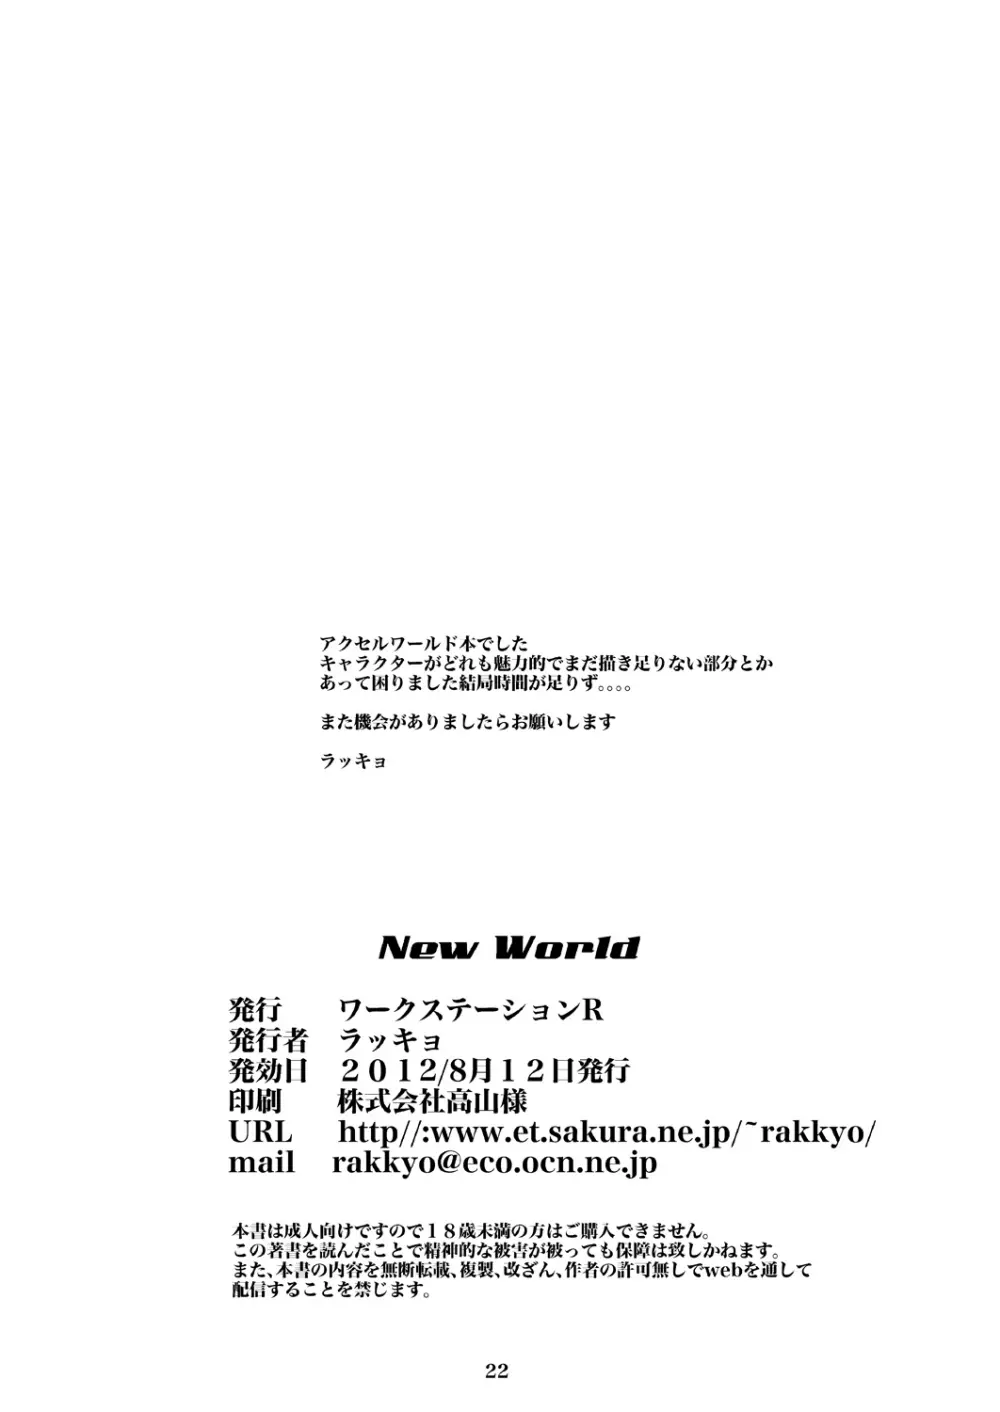 New World 20ページ